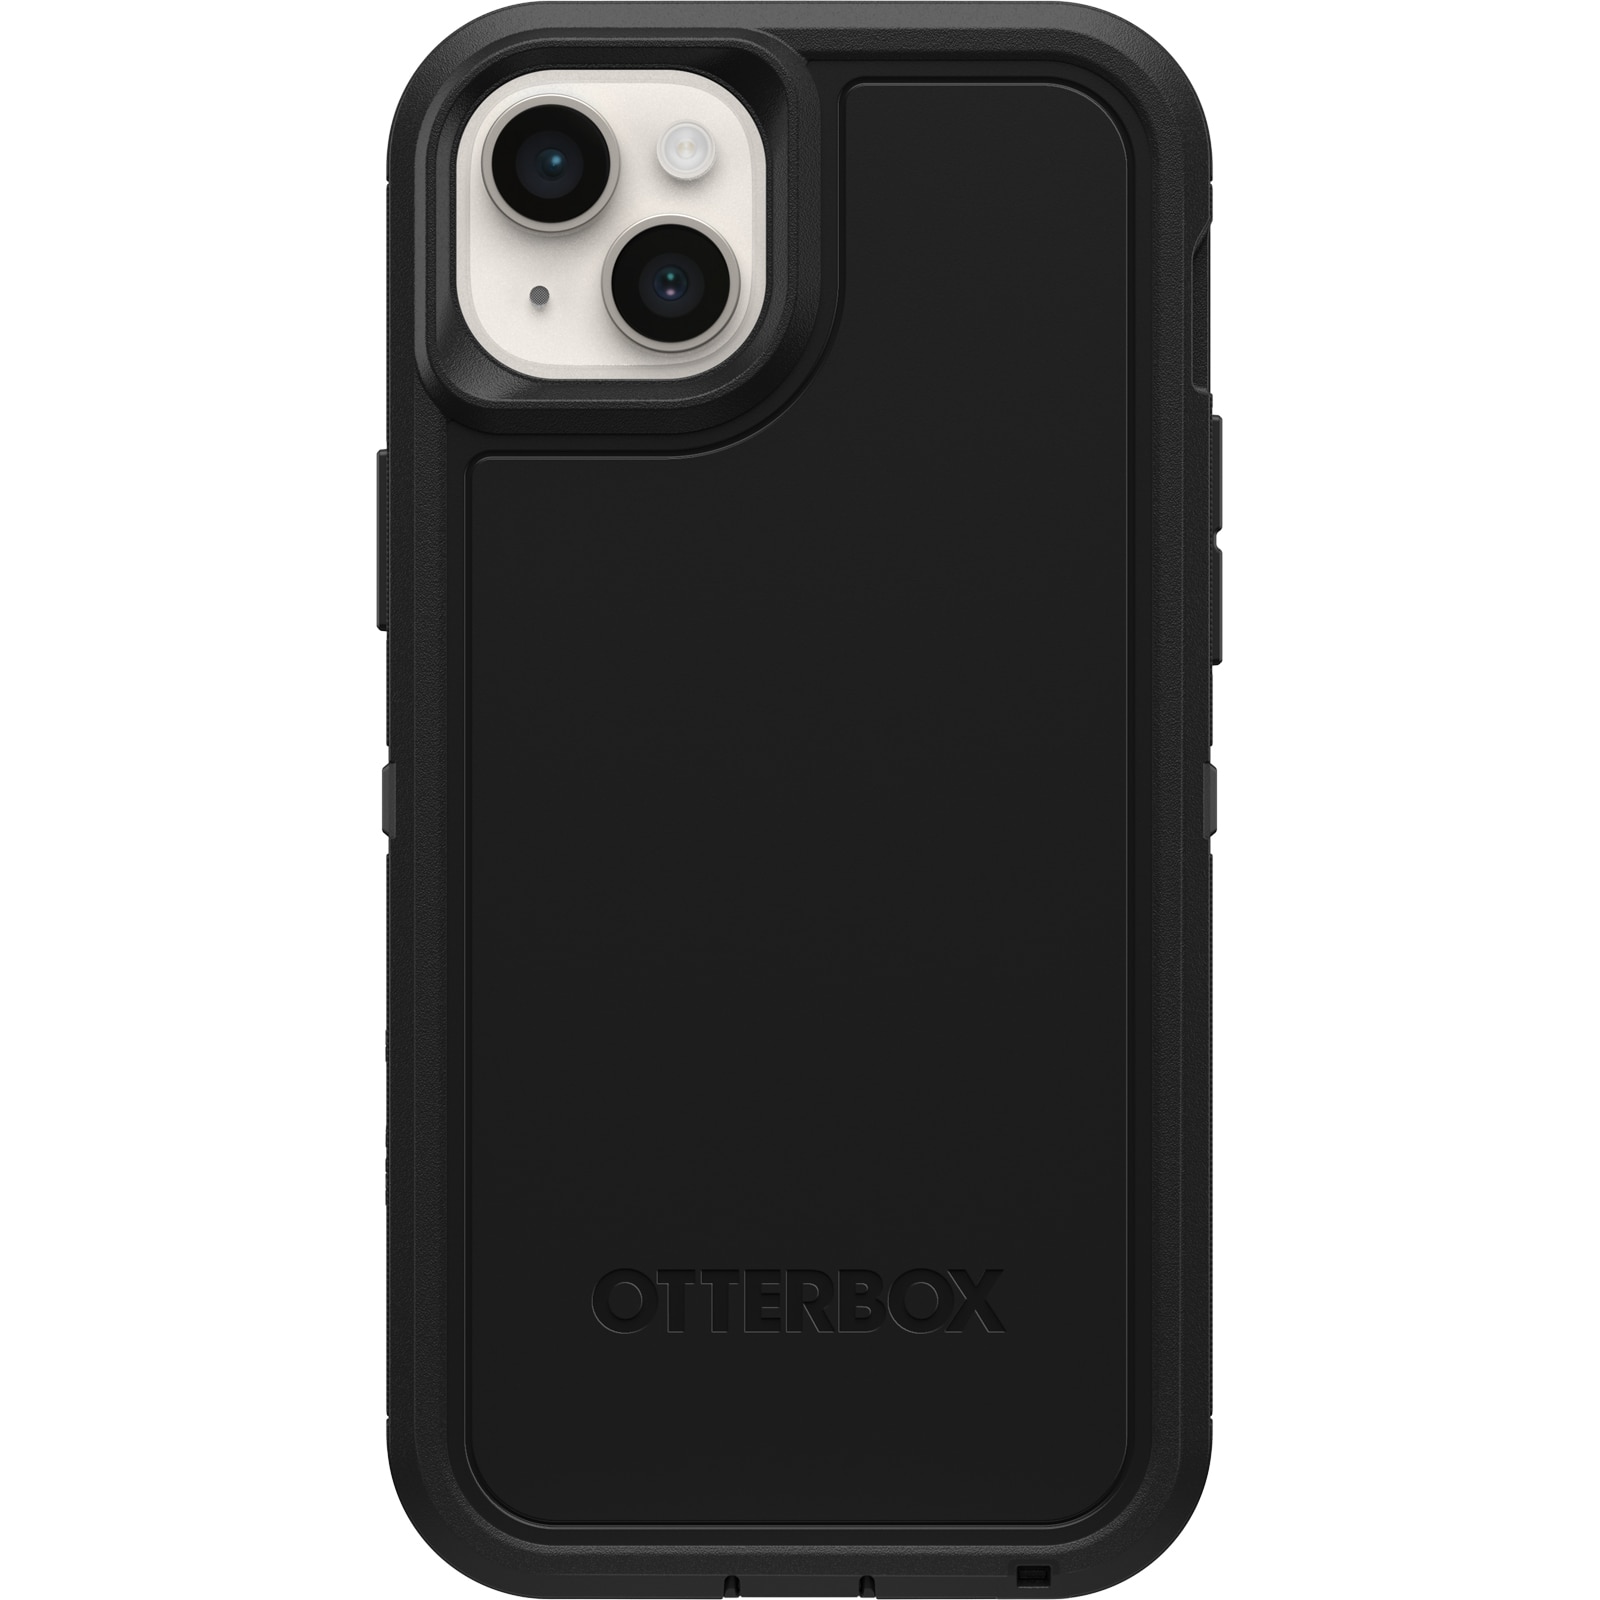 iPhone 14 Defender XT Riktigt stöttåligt MagSafe-skal, svart